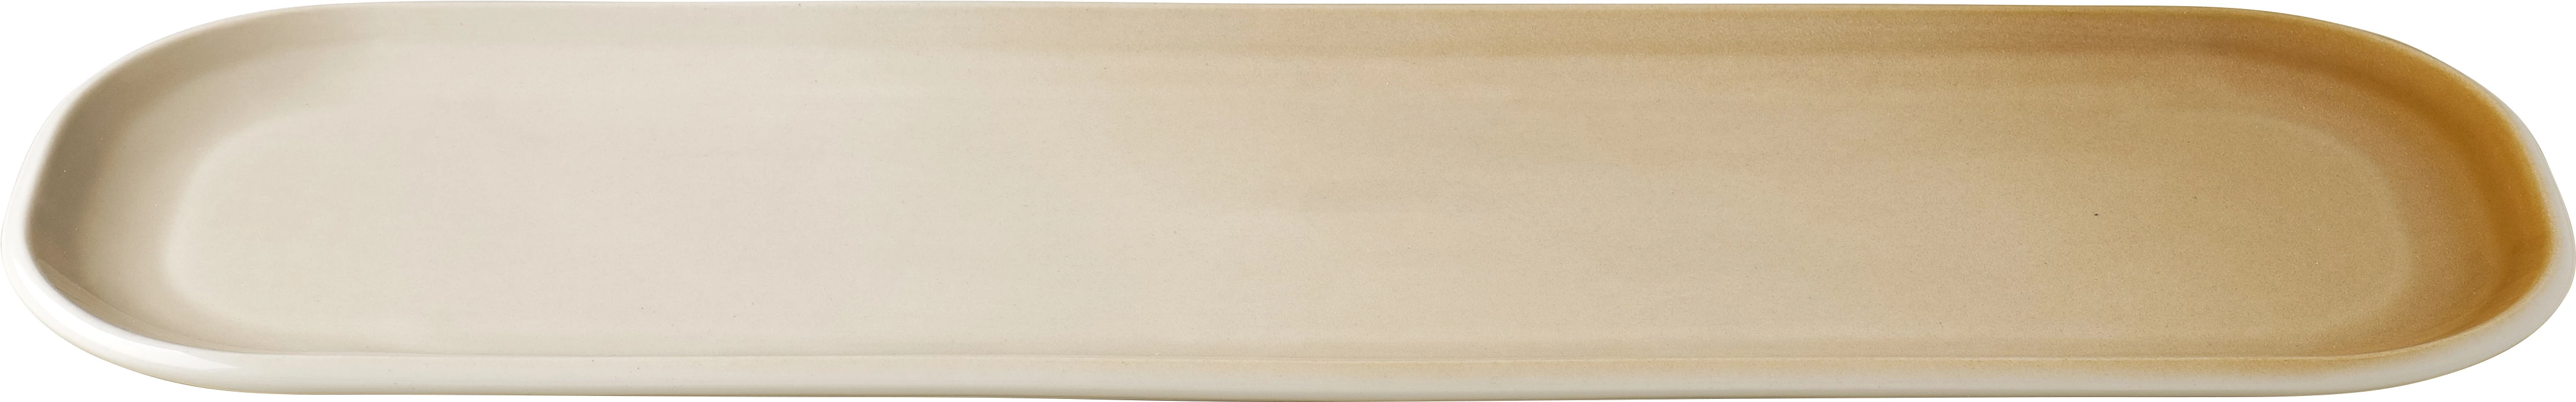 Figgjo Pax fad, oval, sand, 41 x 13 cm